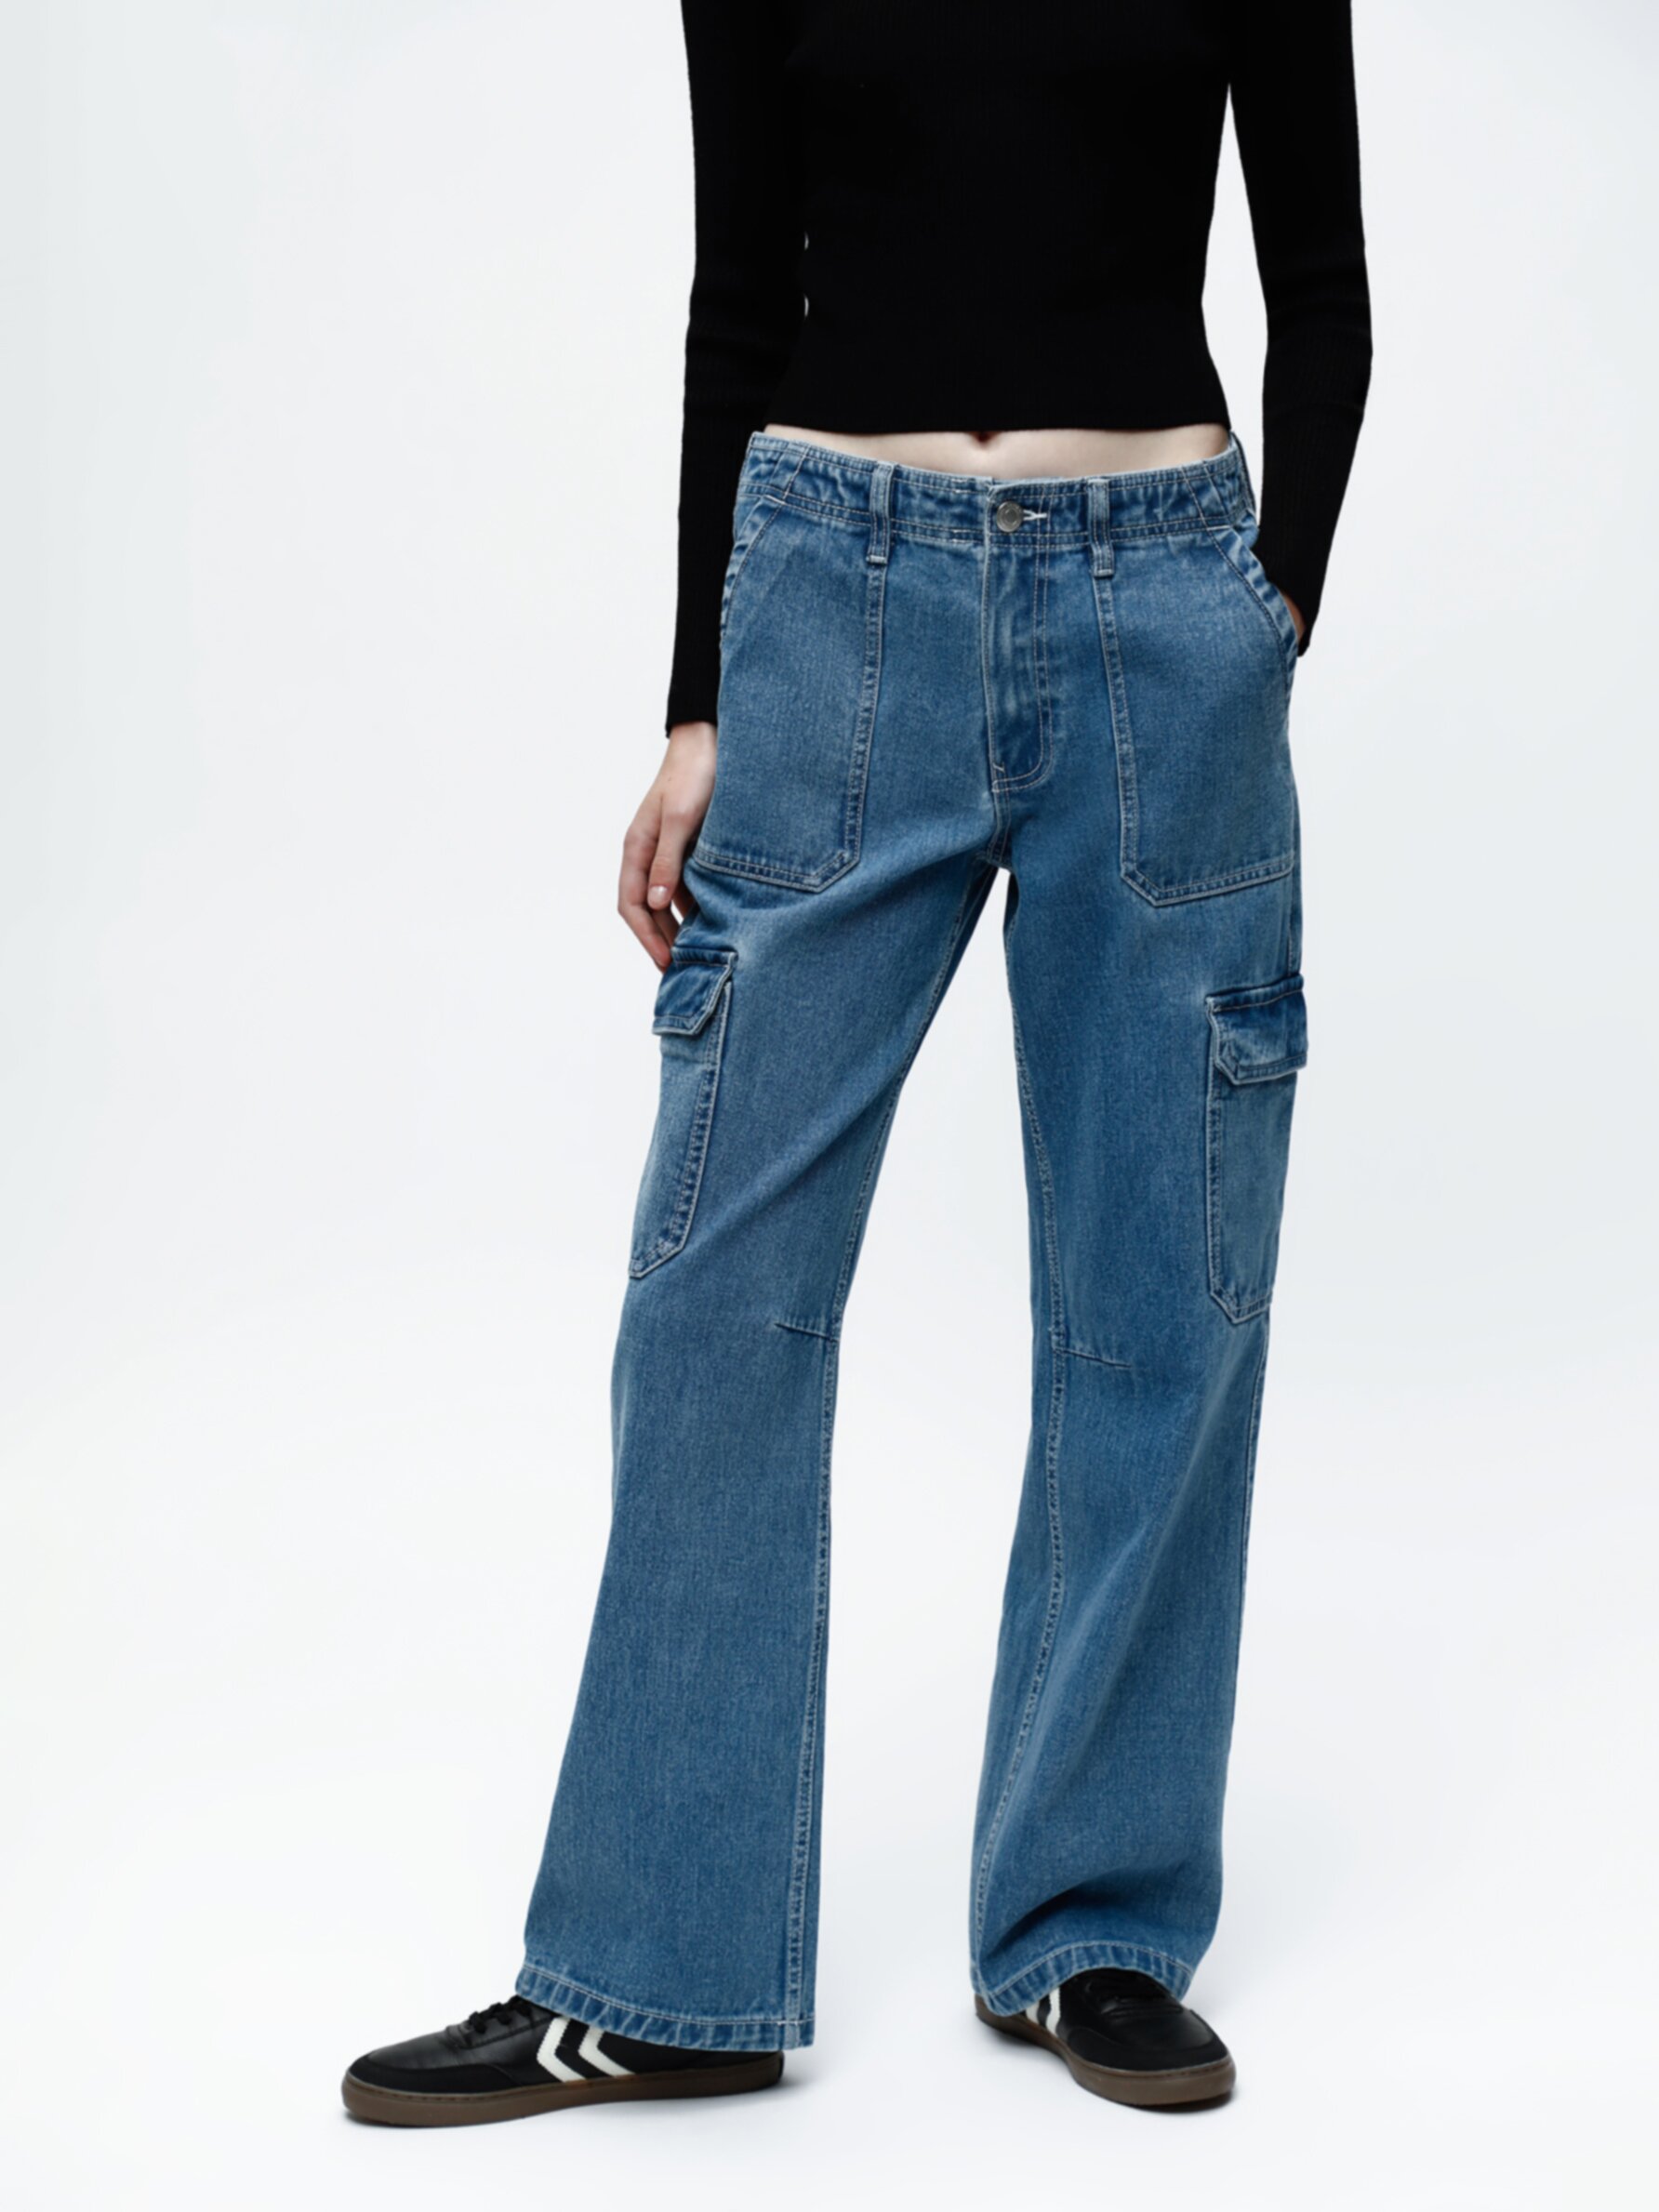 Jeans cargo com bolsos - Mulher